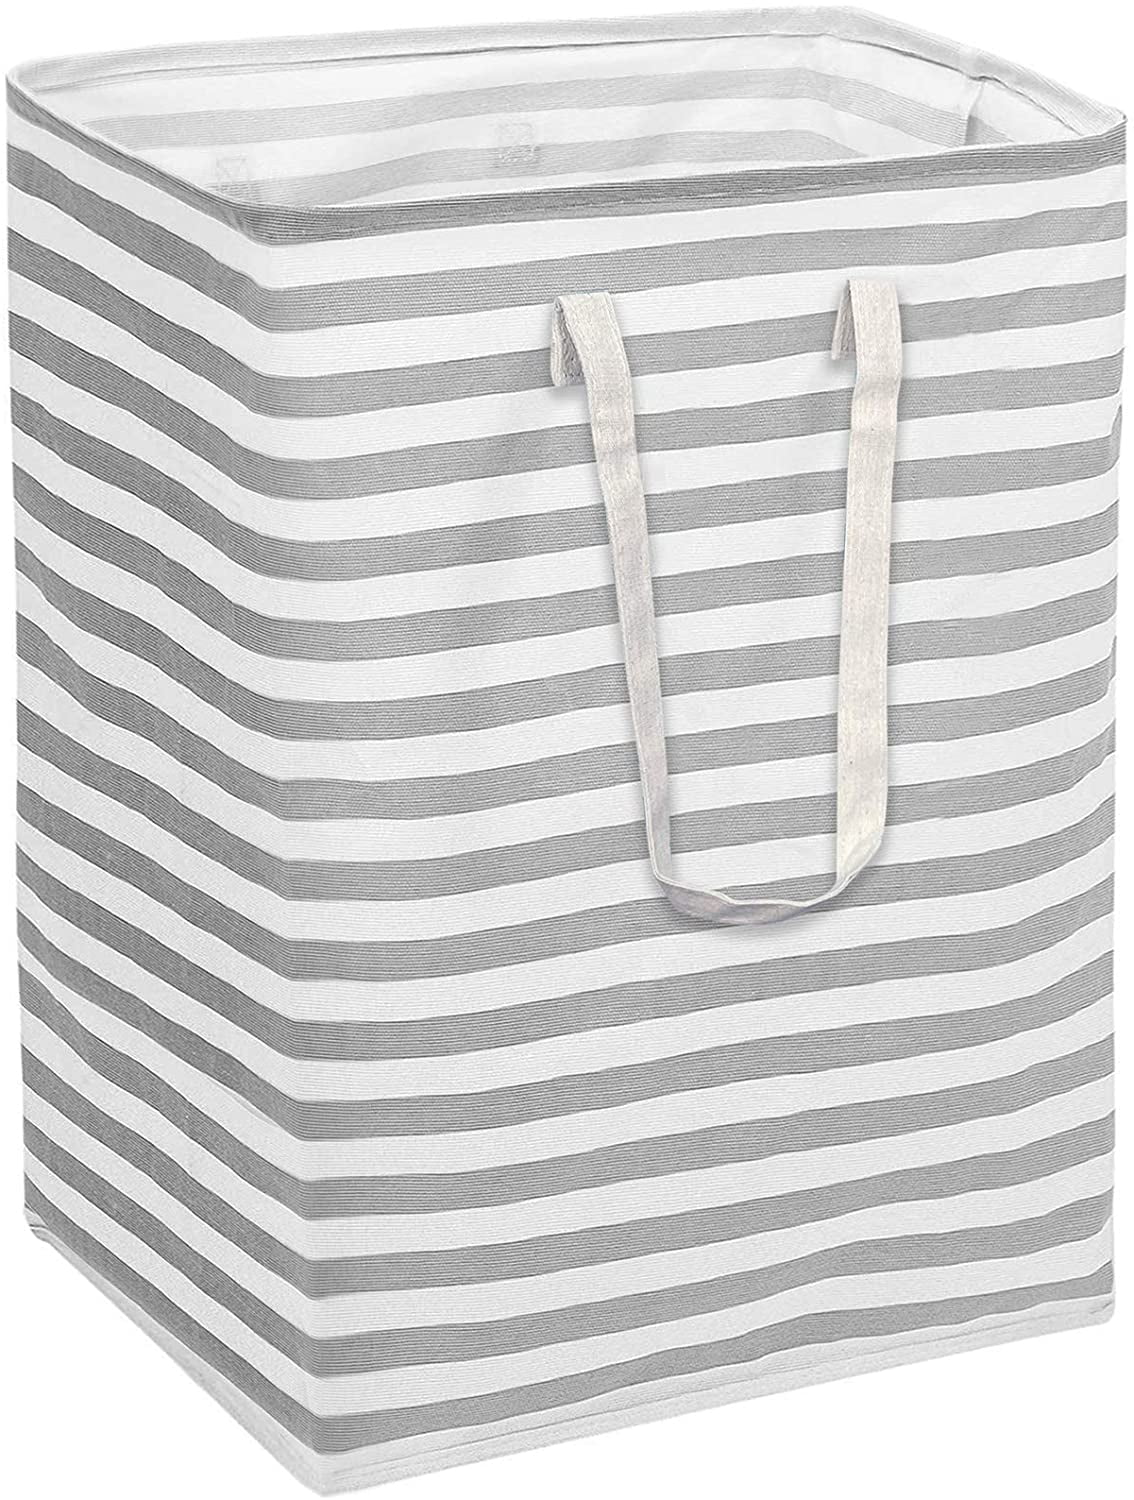 Foldable Hamper Laundry Basket Washing Cloth Storage Bag for Bedrooms Bathroom 